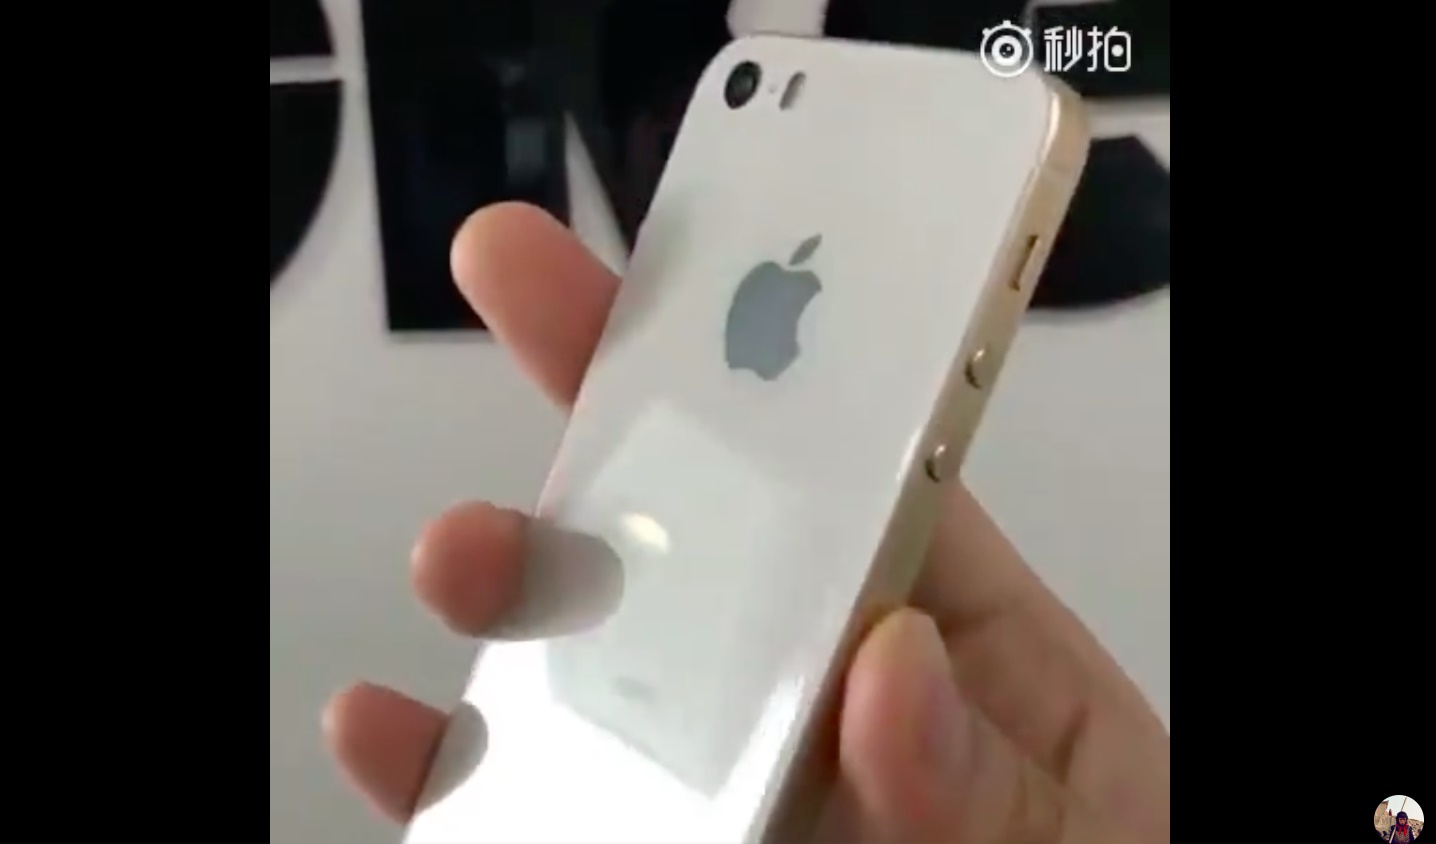 iPhone SE 2 rò rỉ hình ảnh thực tế với jack cắm tai nghe 3.5mm